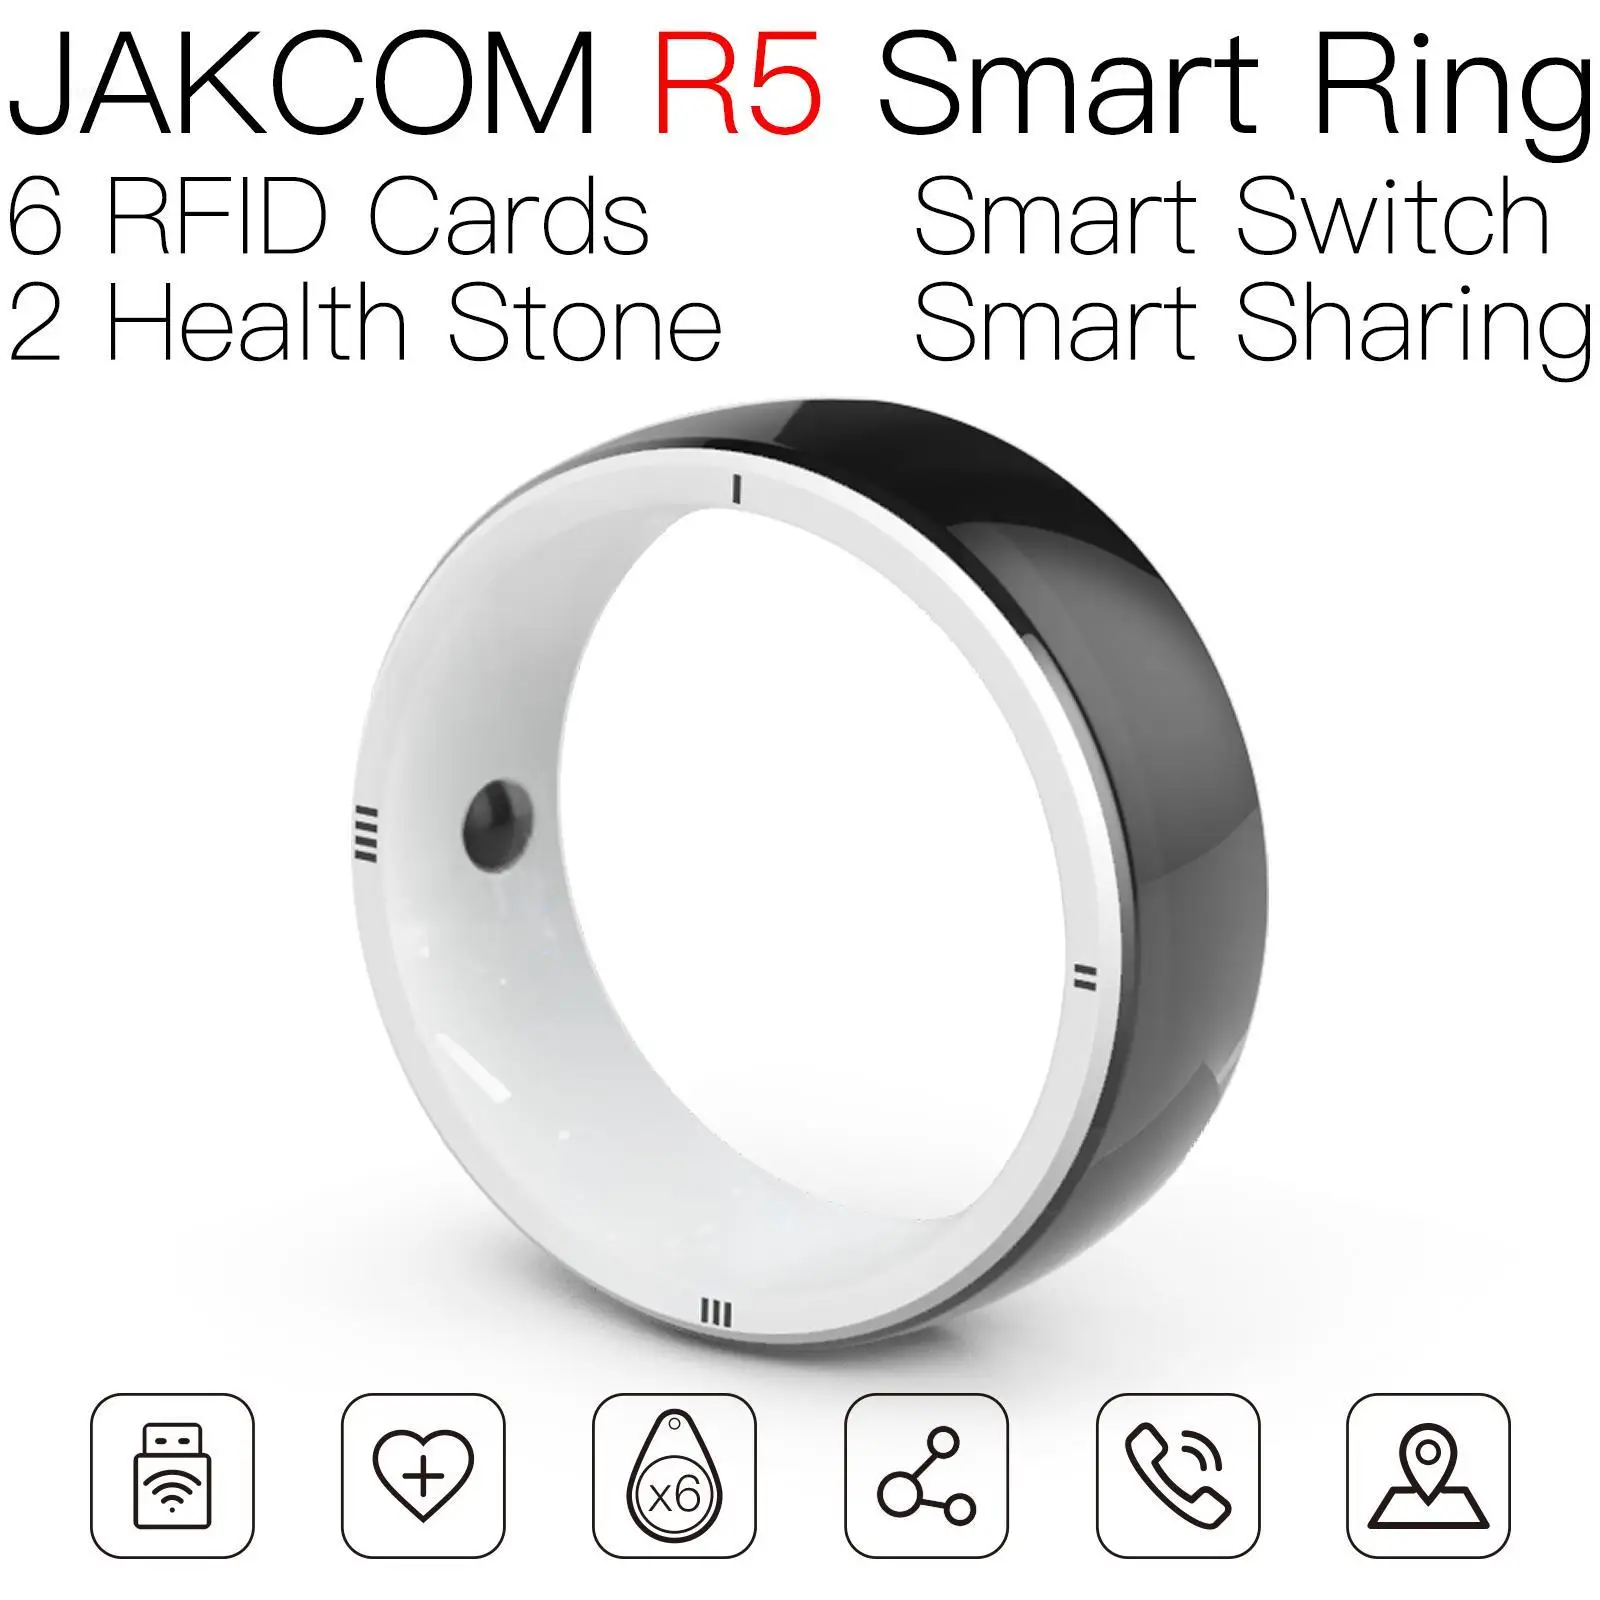 

Умное кольцо JAKCOM R5 лучше, чем умные часы фрилансера, низкая цена hey plus 1s, умный Браслет, 7 банковских планшетов